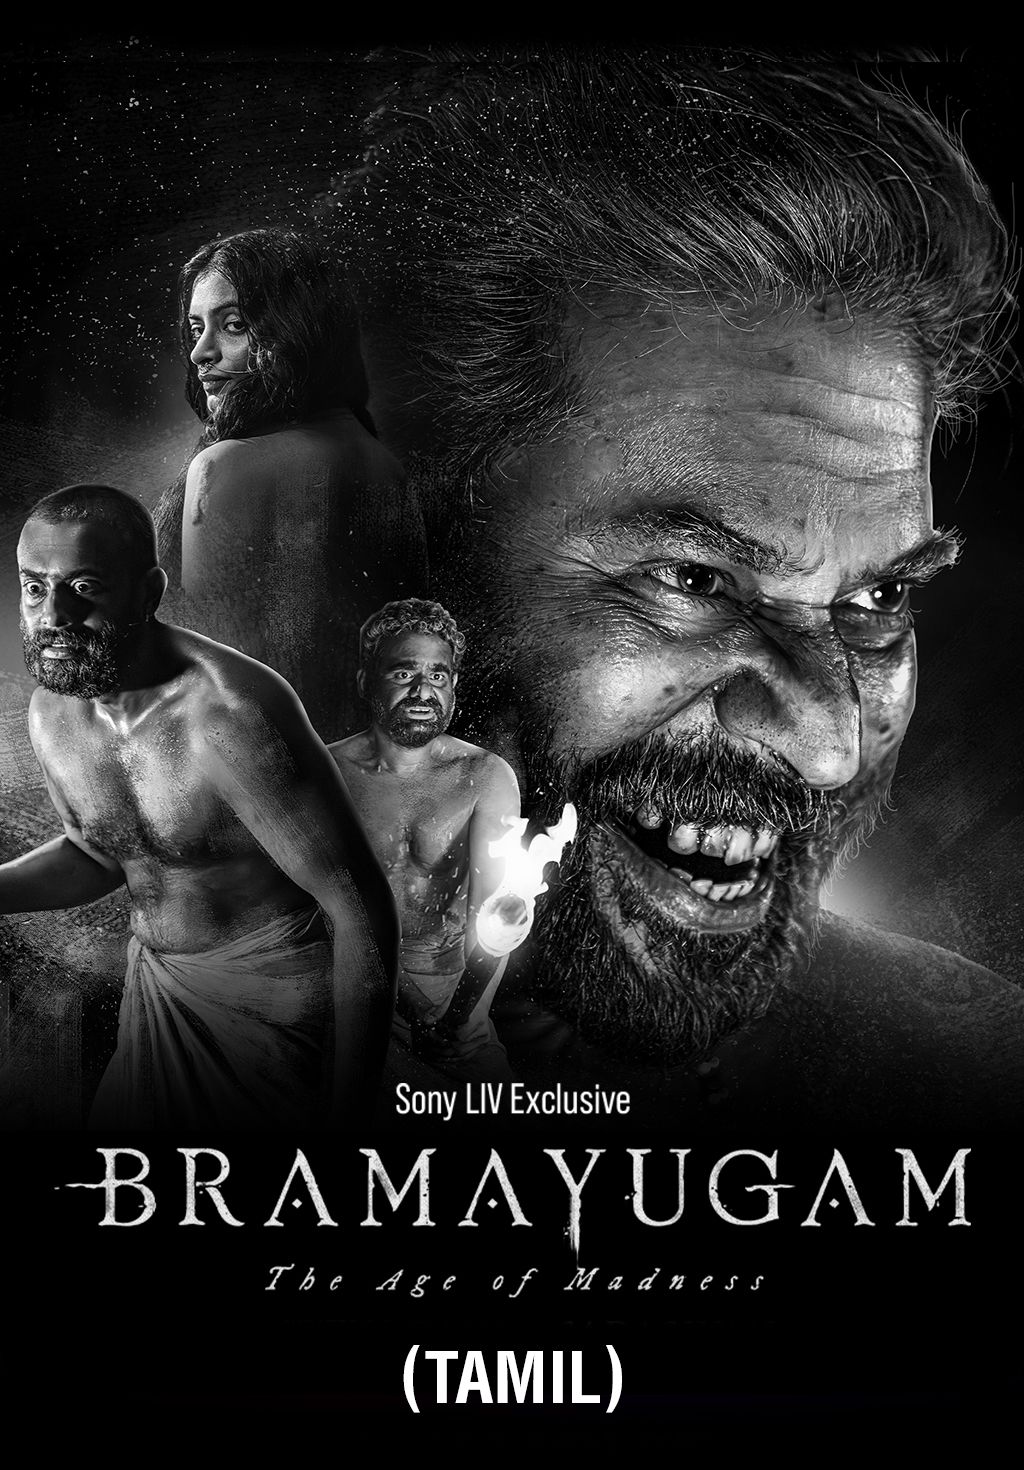 Bramayugam (Tamil)